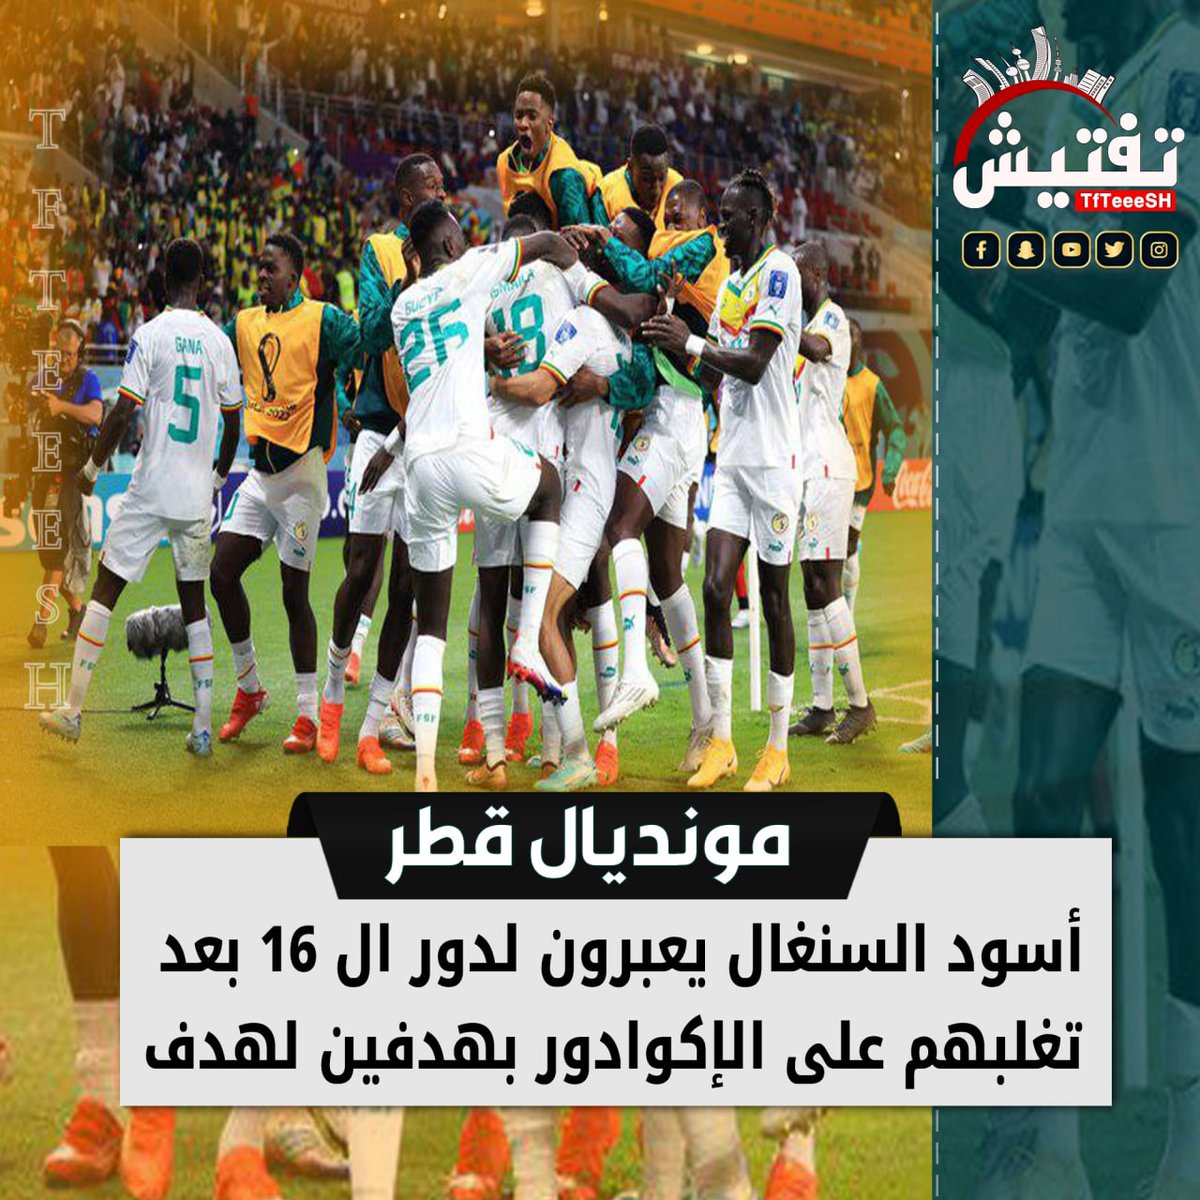 #مونديال_قطر :
• أسود السنغال يعبرون لدور ال 16 بعد تغلبهم على الإكوادور بهدفين لهدف.

#نواب_المقصه
#المغرب_بلجيكا